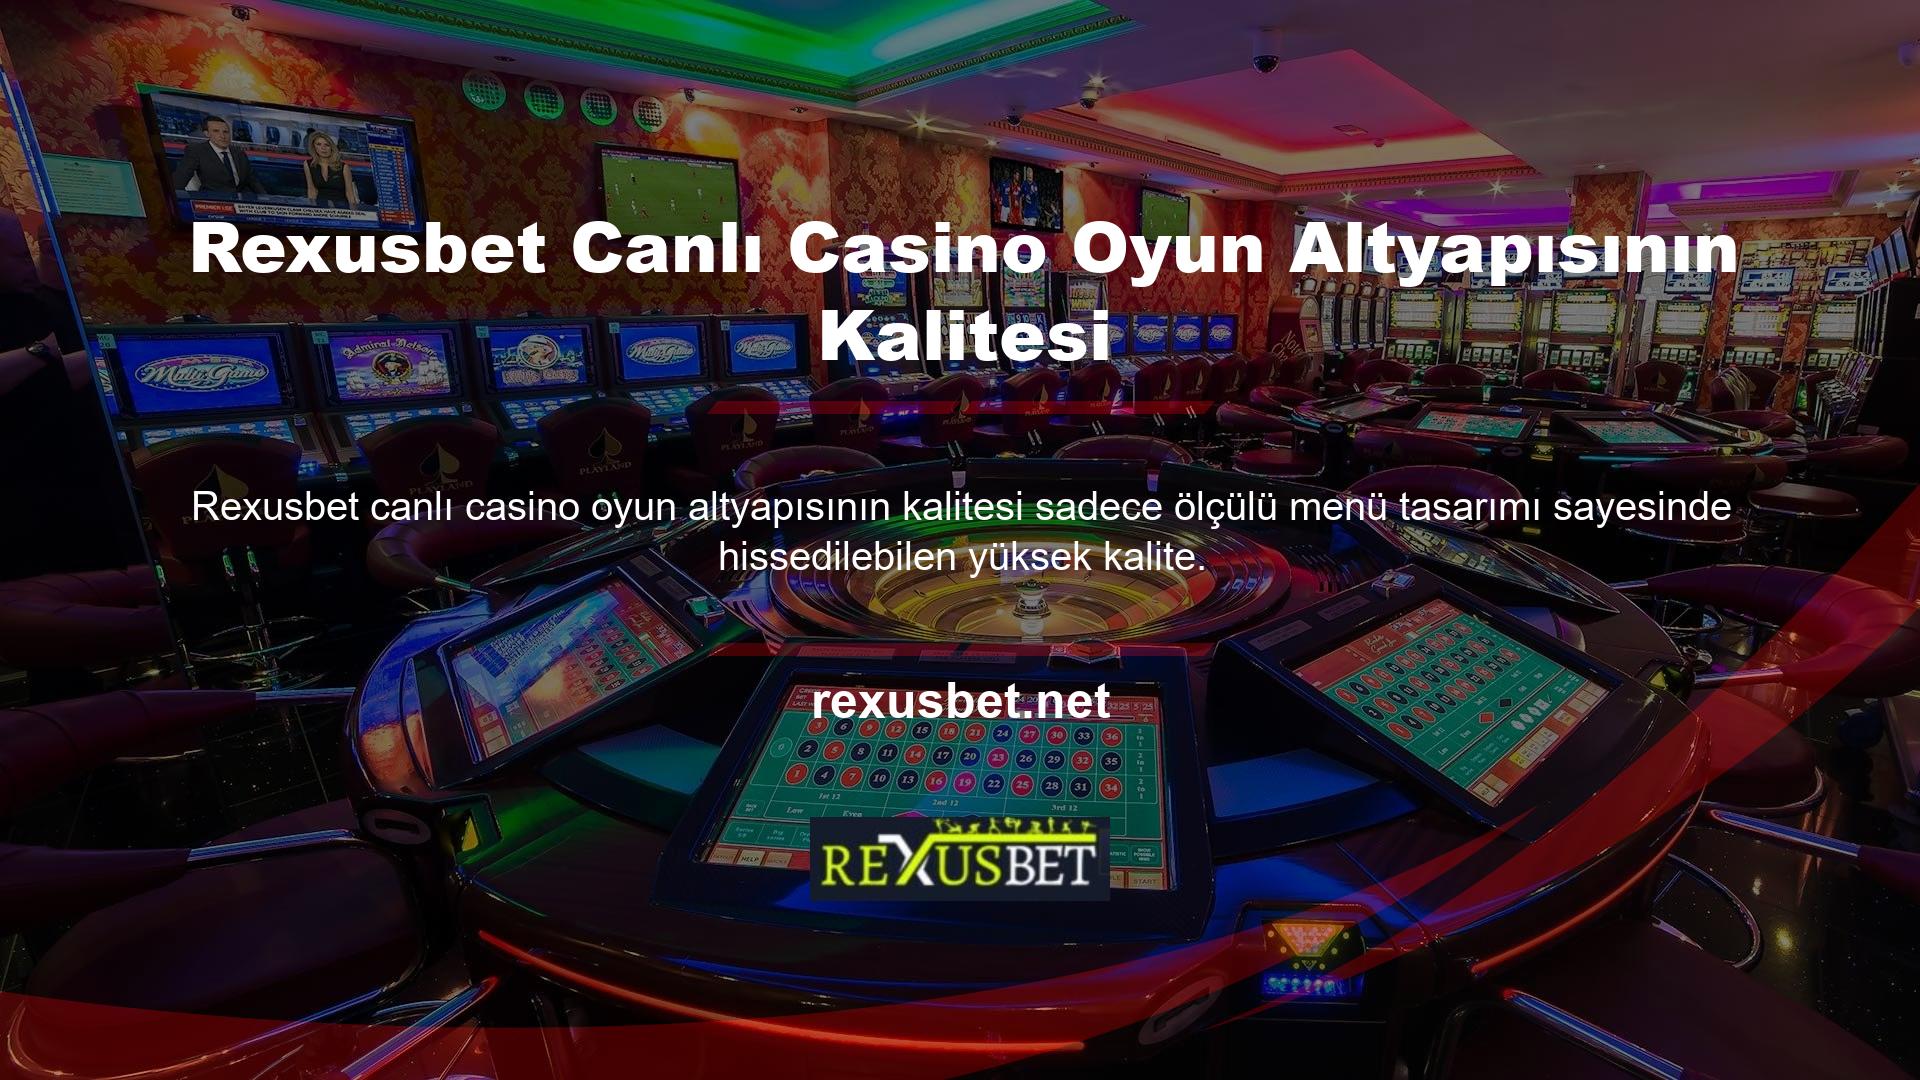 Rexusbet canlı casino oyunları için bir kategori oluşturmuştur